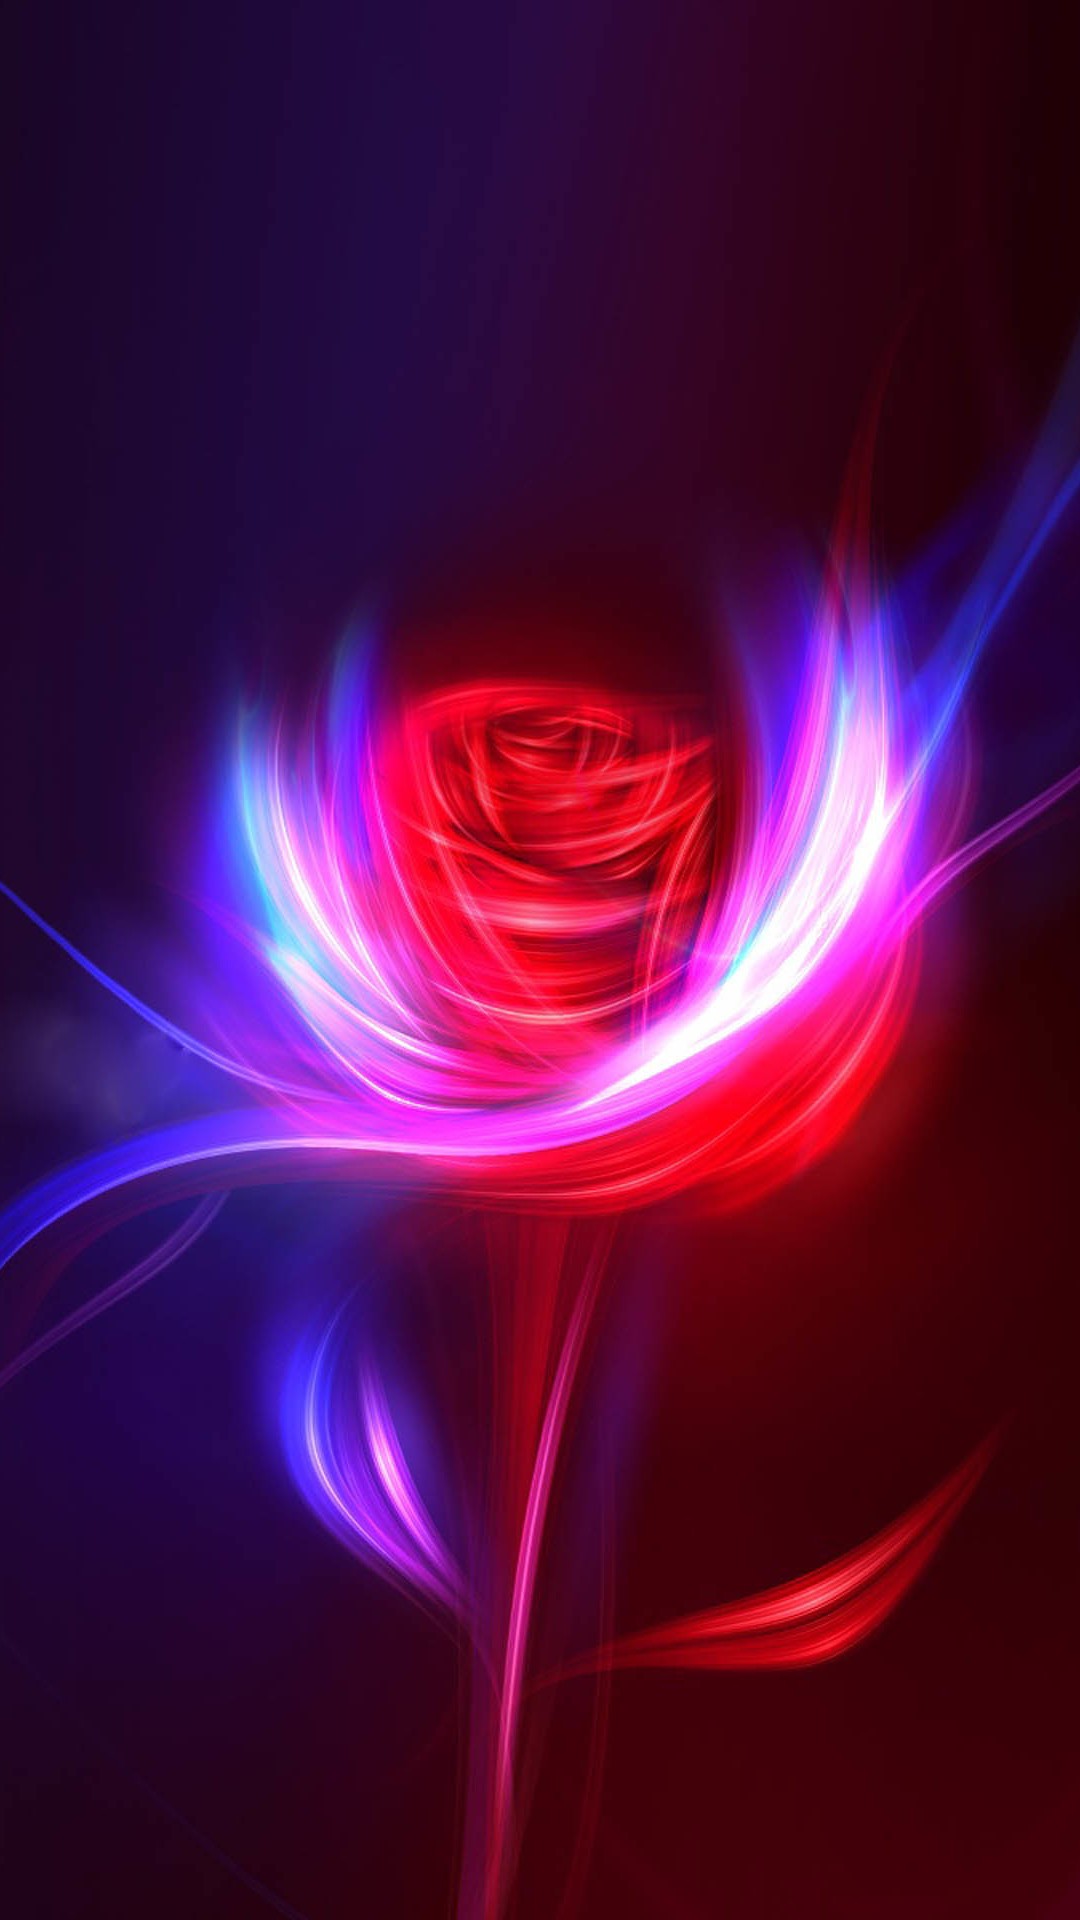 Fantasy Rose Swirl Light Design Art iPhone Wallpaper